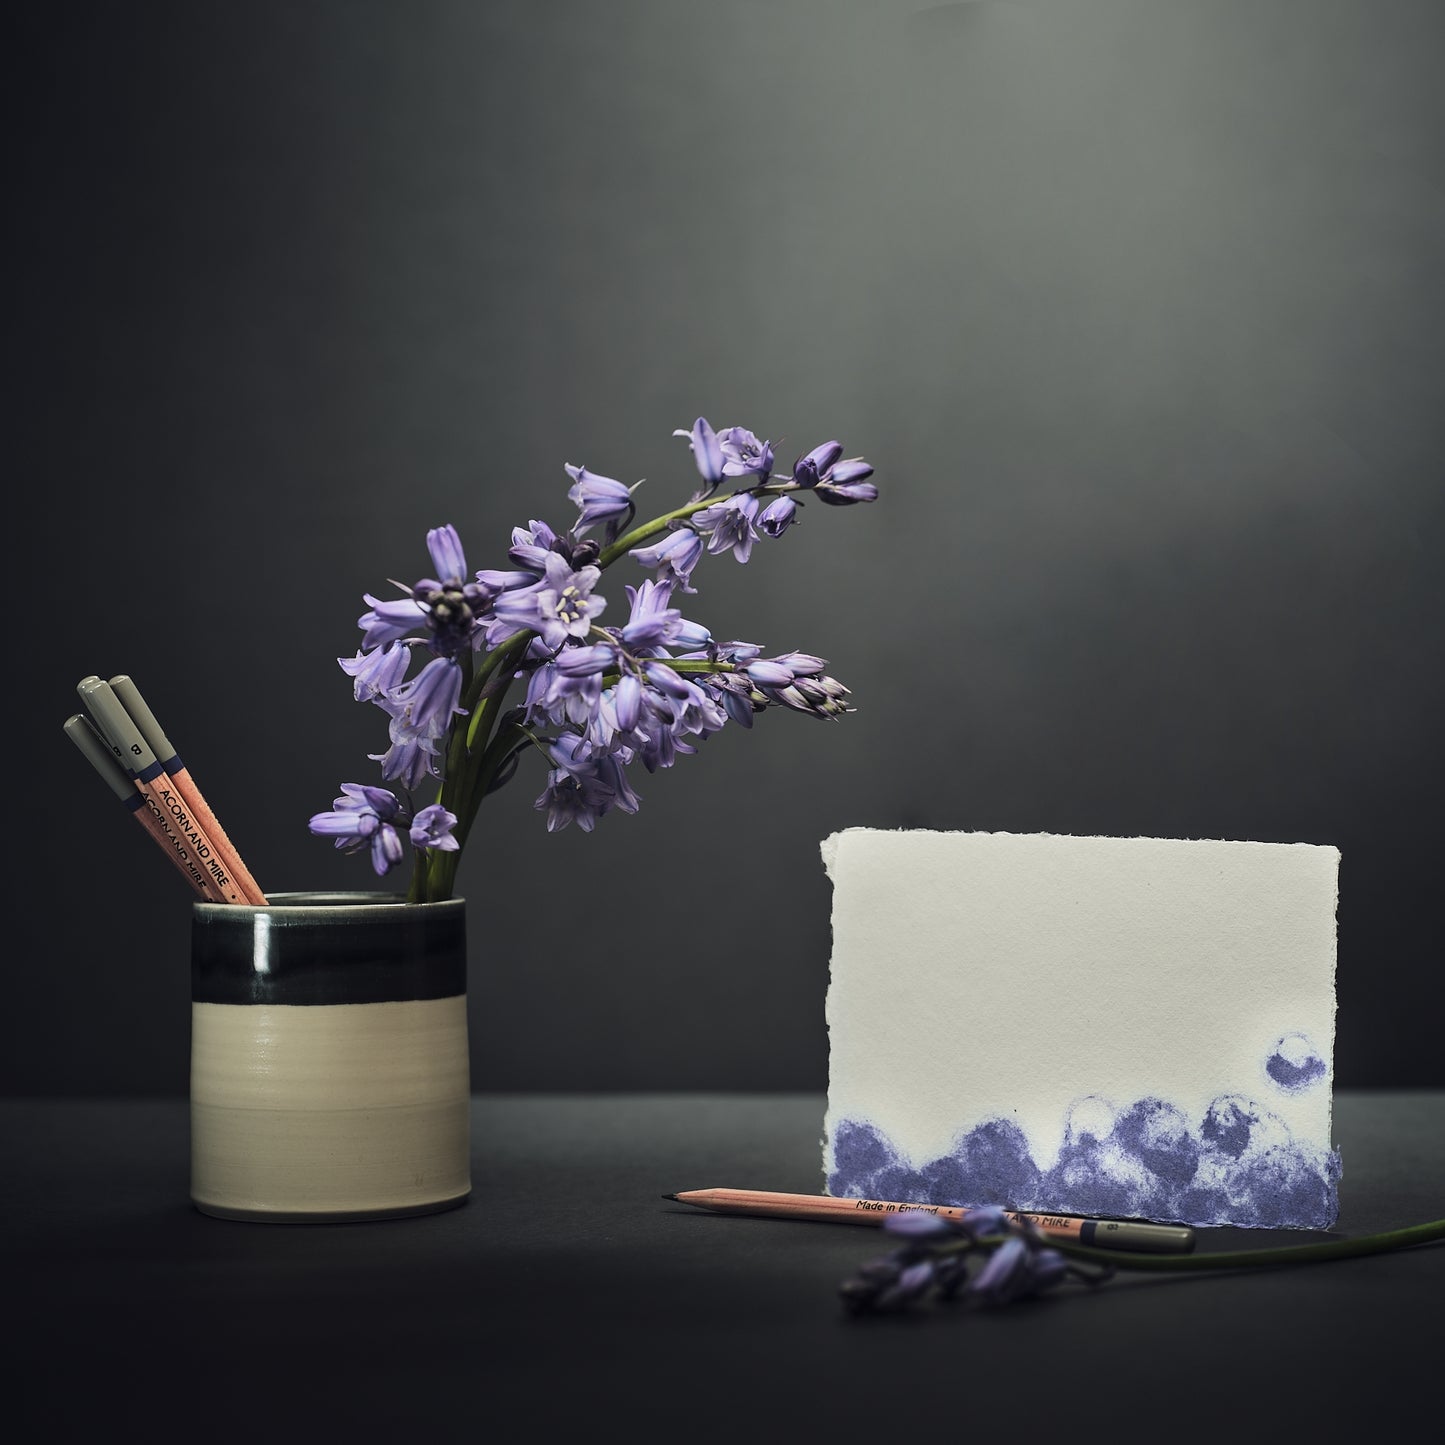 Bluebell handmade paper and envelope